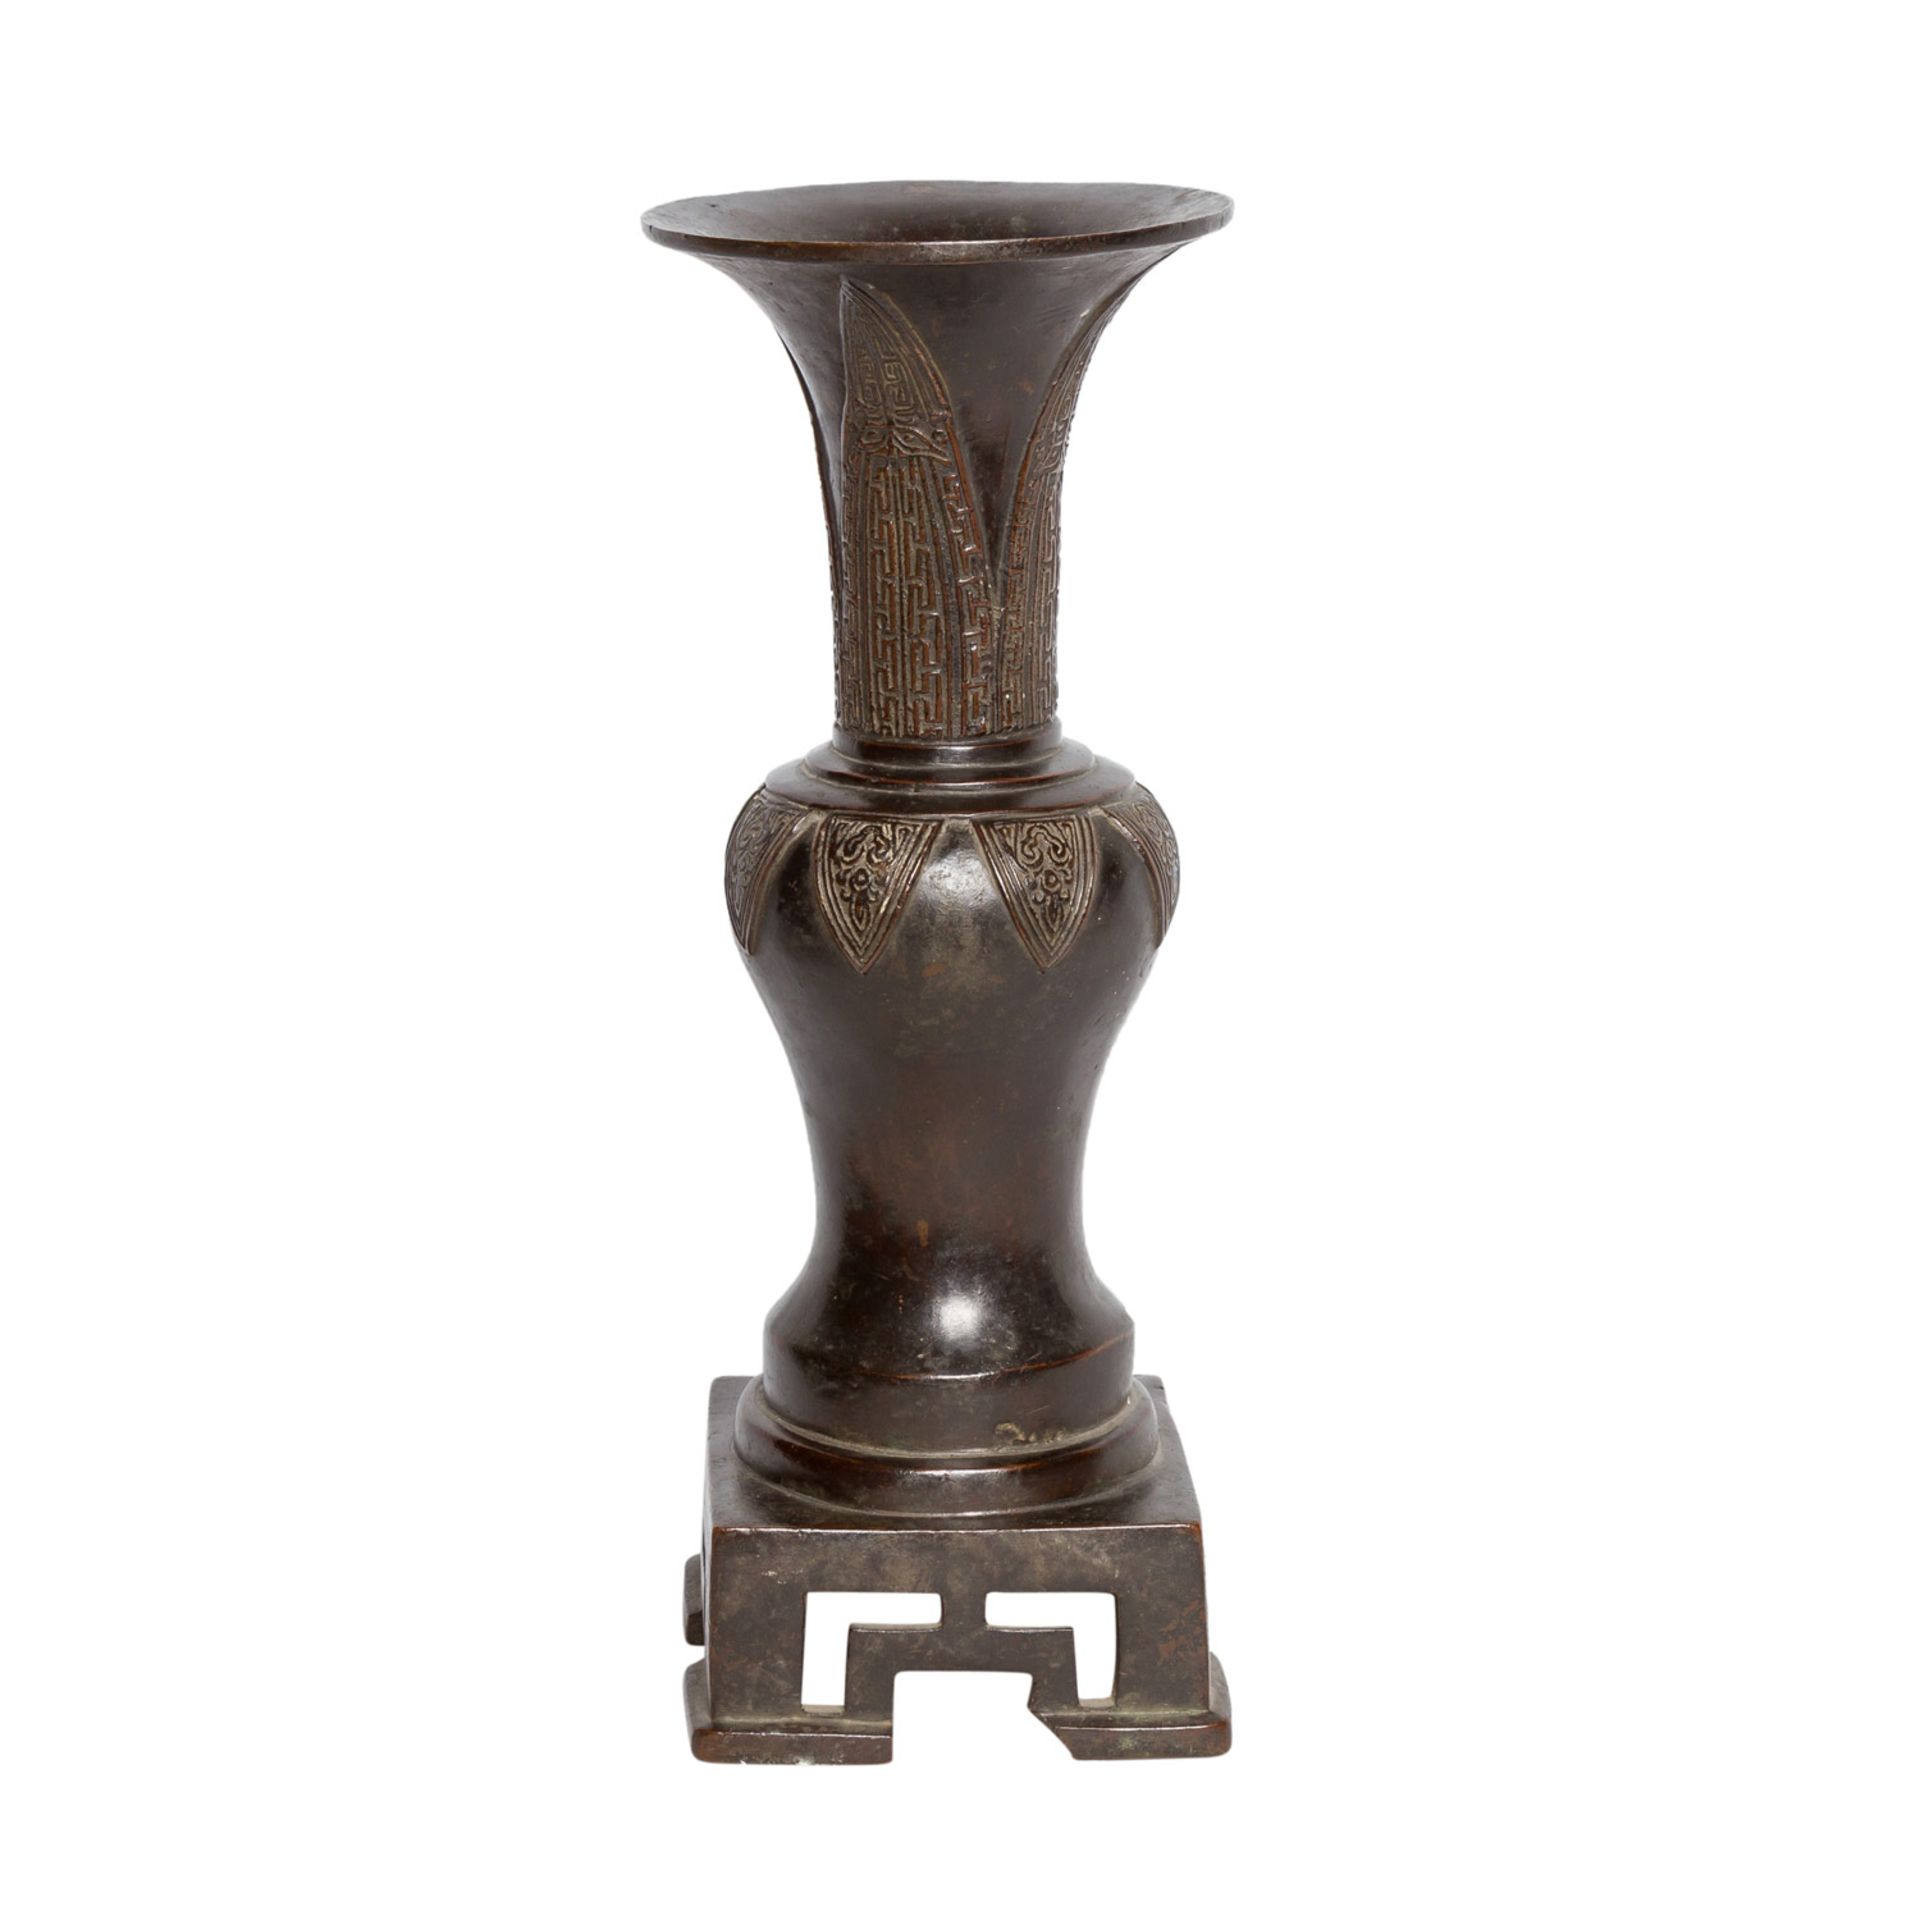 Vase auf mitgegossenem Sockel aus Bronze. CHINA, 18./19. Jh..In Form eines archaischen Bechers vom - Image 4 of 7